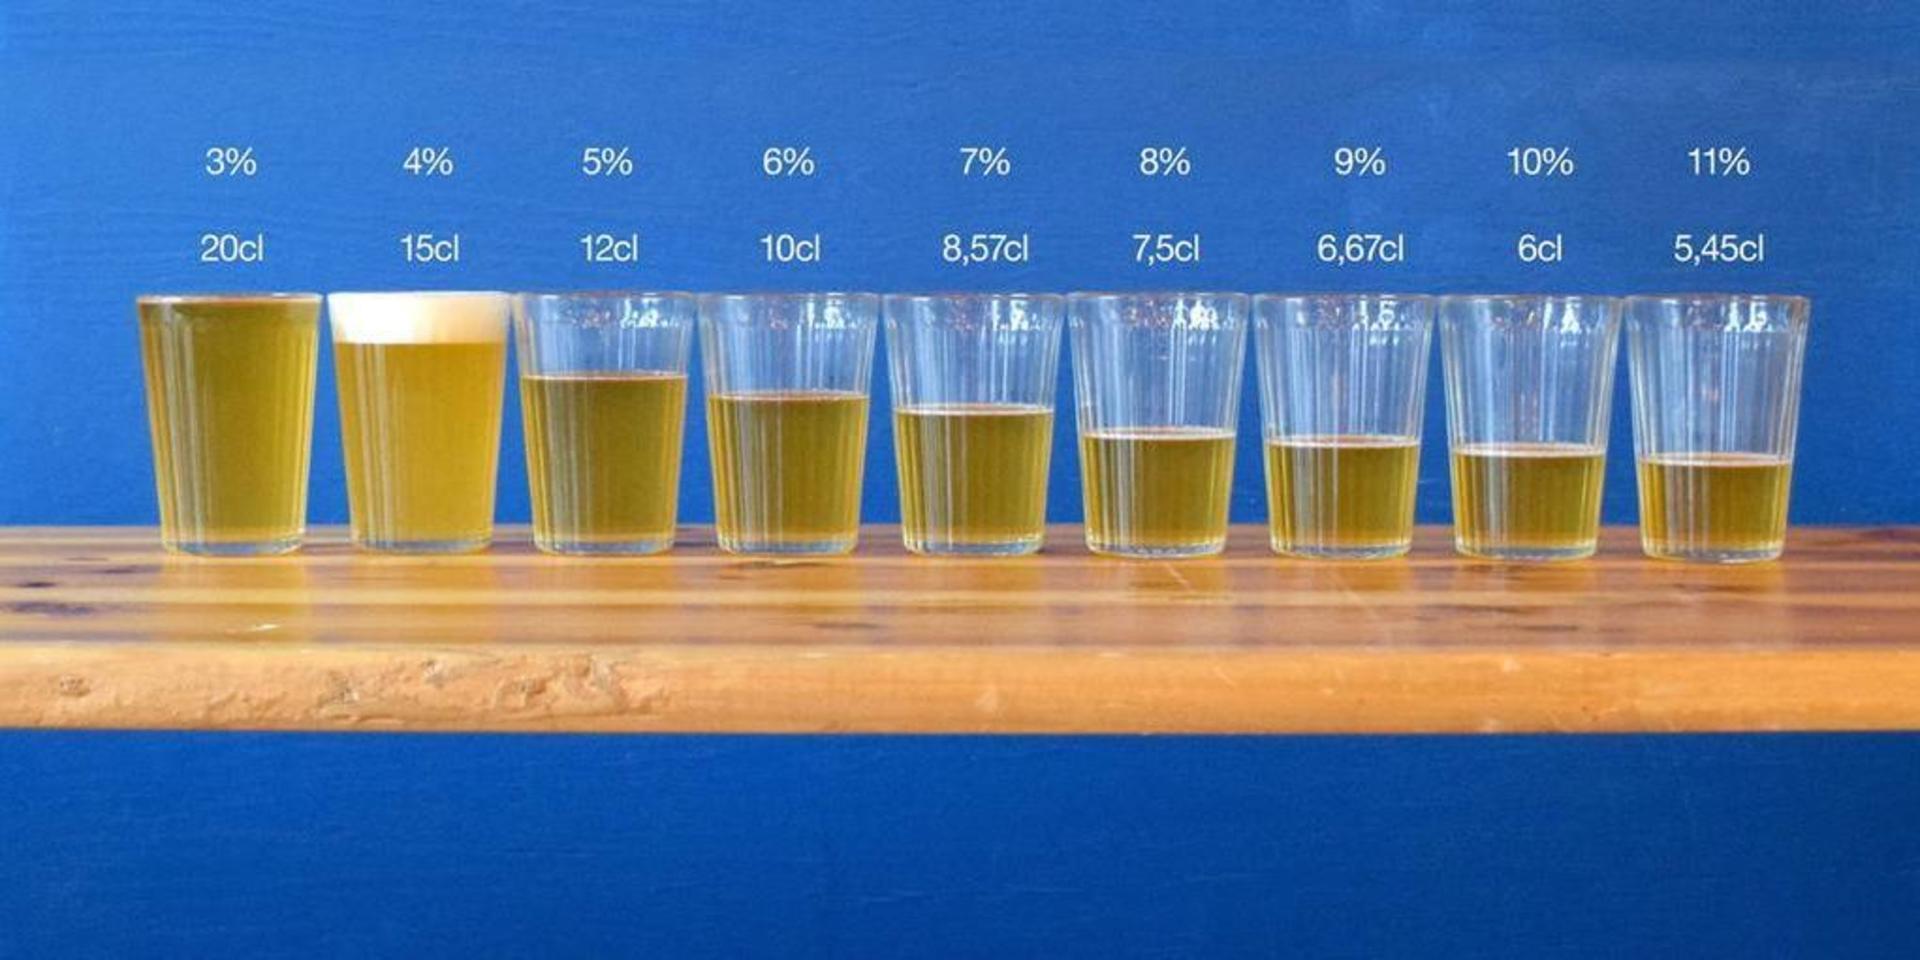 Bryggeriet Beerbliotek har illustrerat fördelningen ut för provsmakning baserat på alkoholvolym kan se ut. 